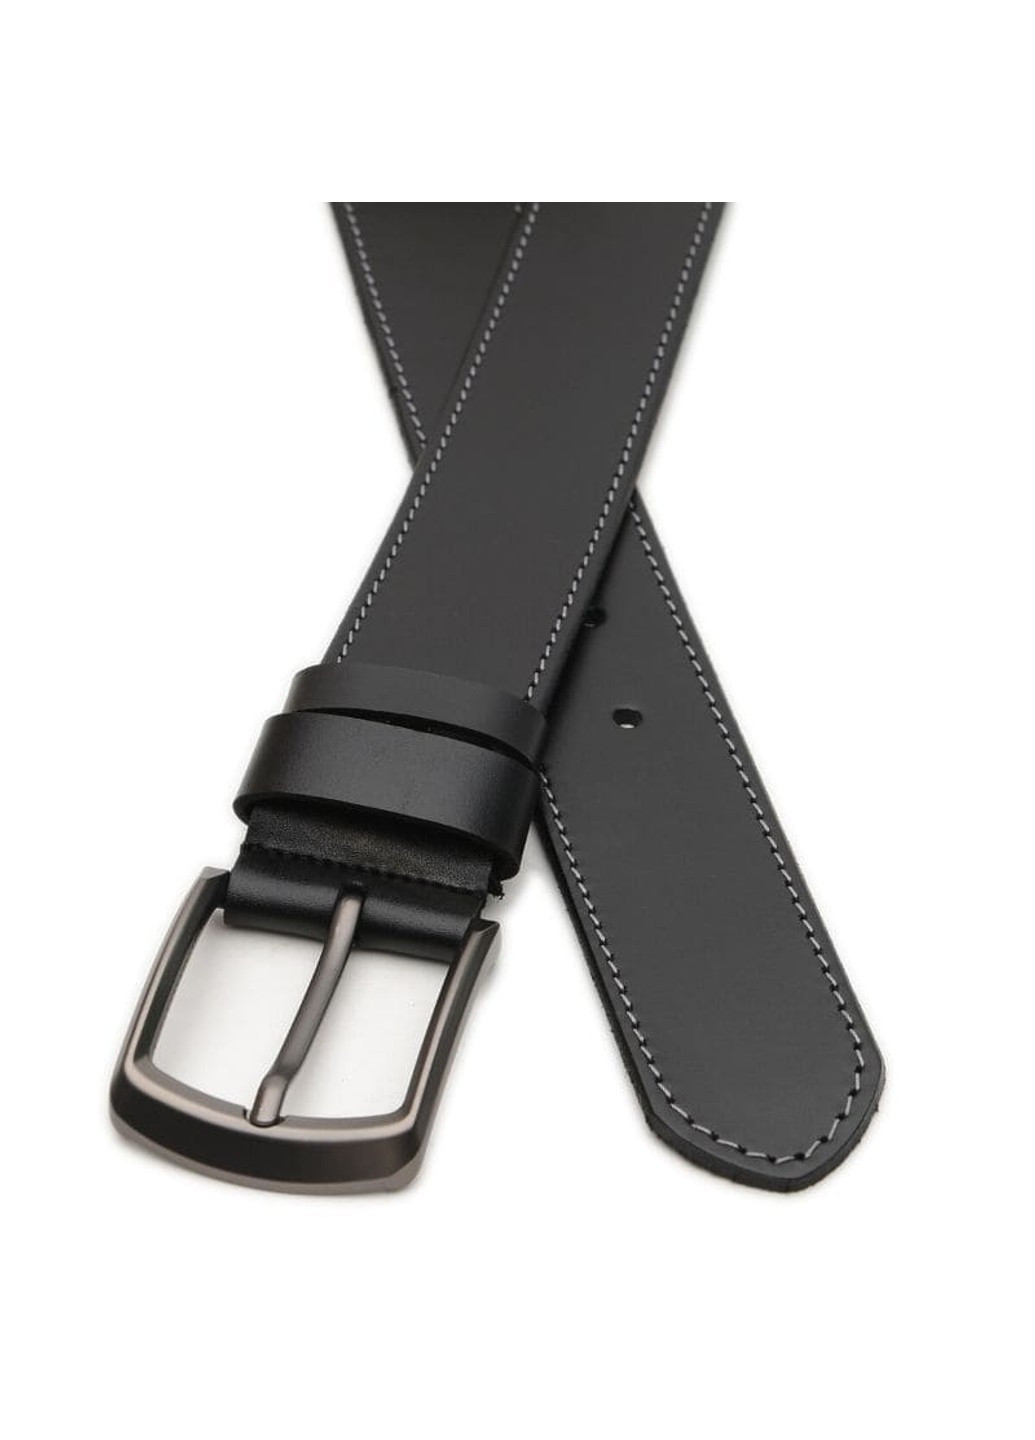 Широкий Мужской кожаный ремень 4,5 см V1115GX38-black Borsa Leather (266143421)